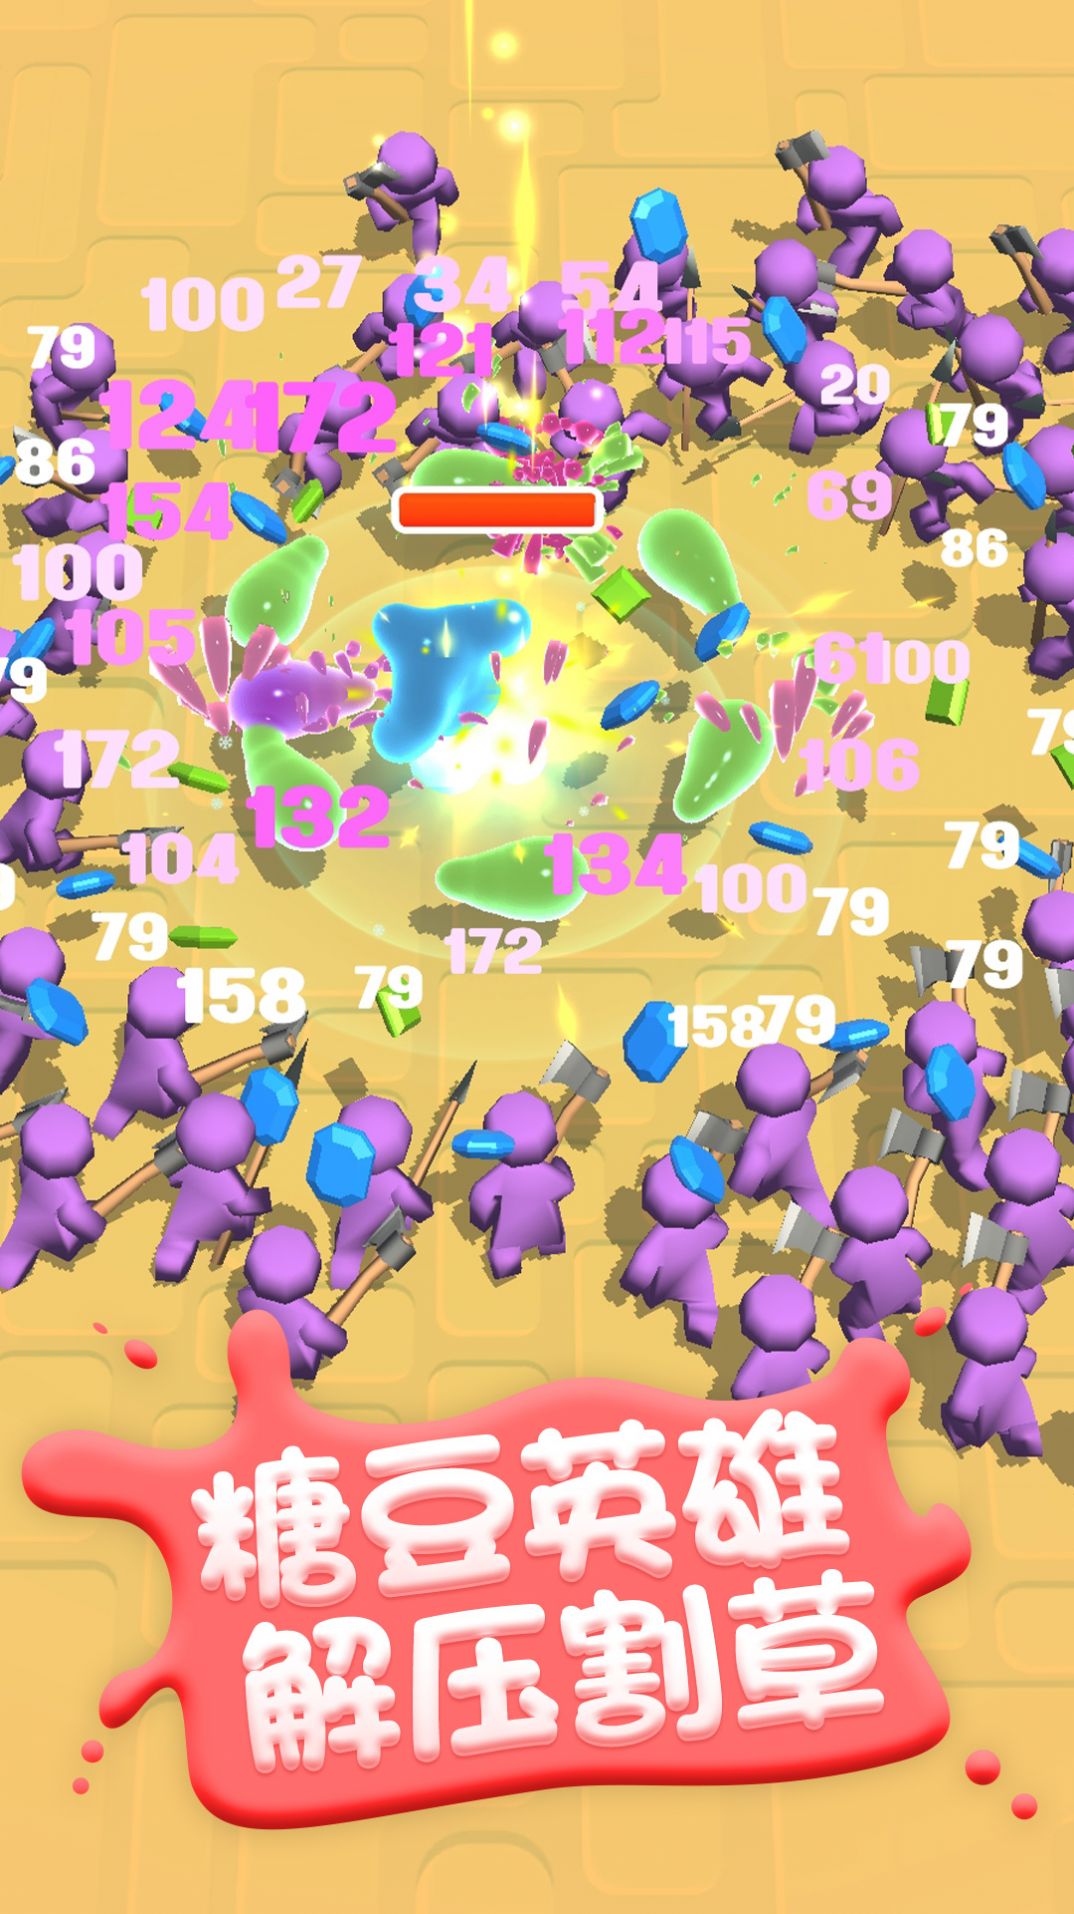 糖豆人挑战赛单机版游戏官方安卓版截图3: